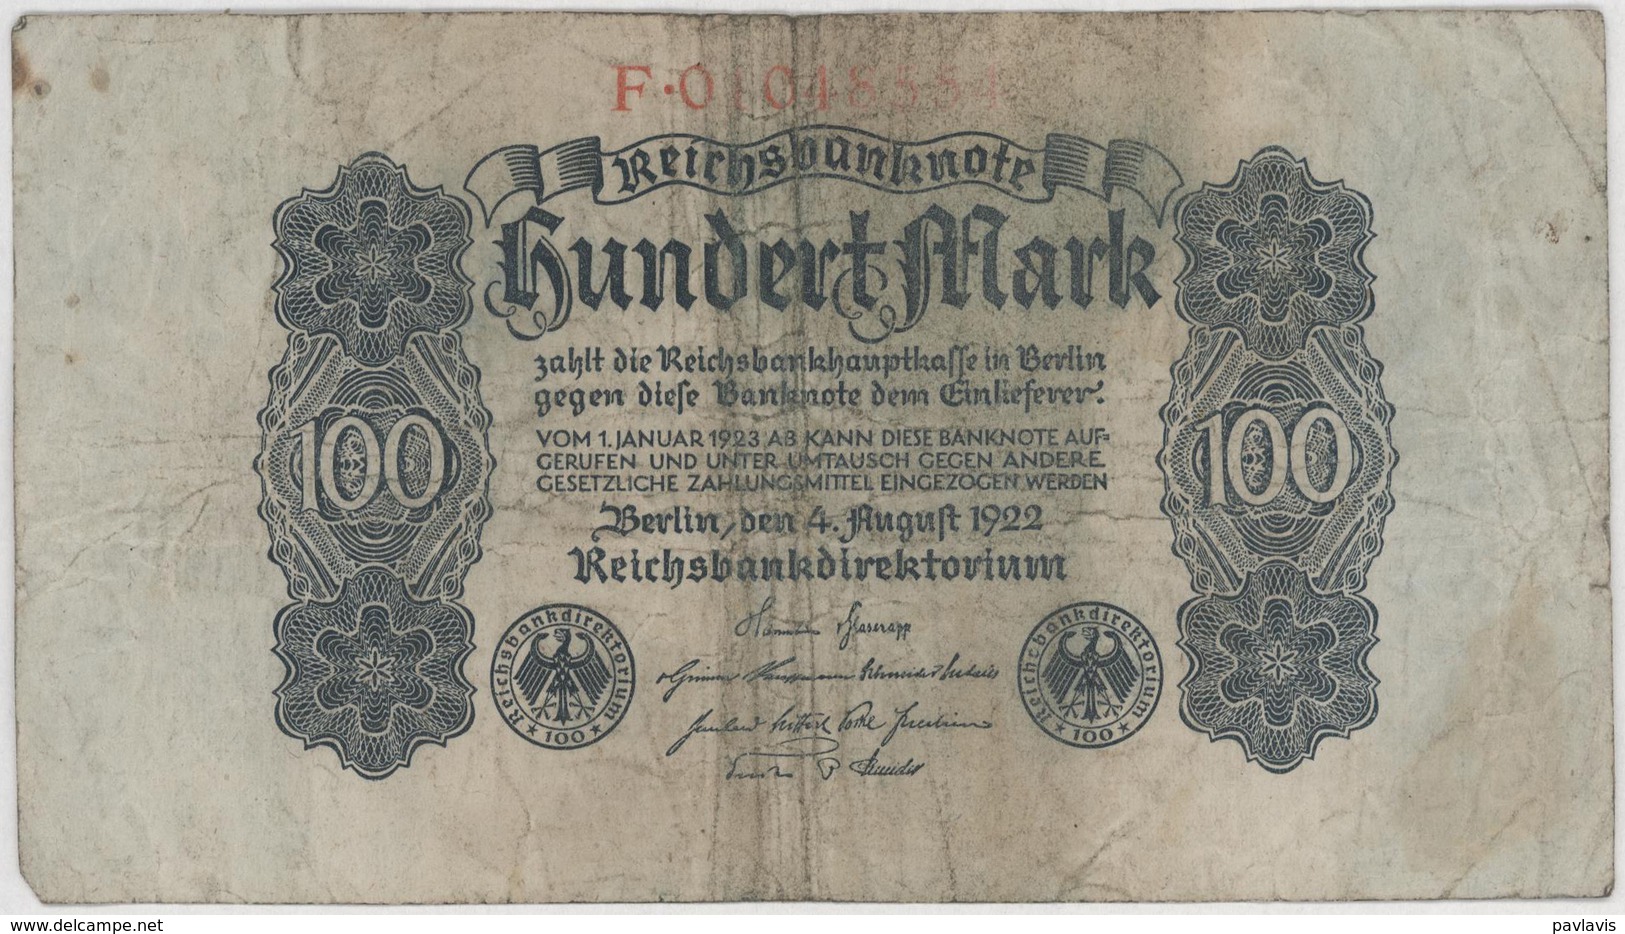 100 Mark - Reichsbanknote - German Reich / Deutsches Reich - Year 1922 - 100 Mark